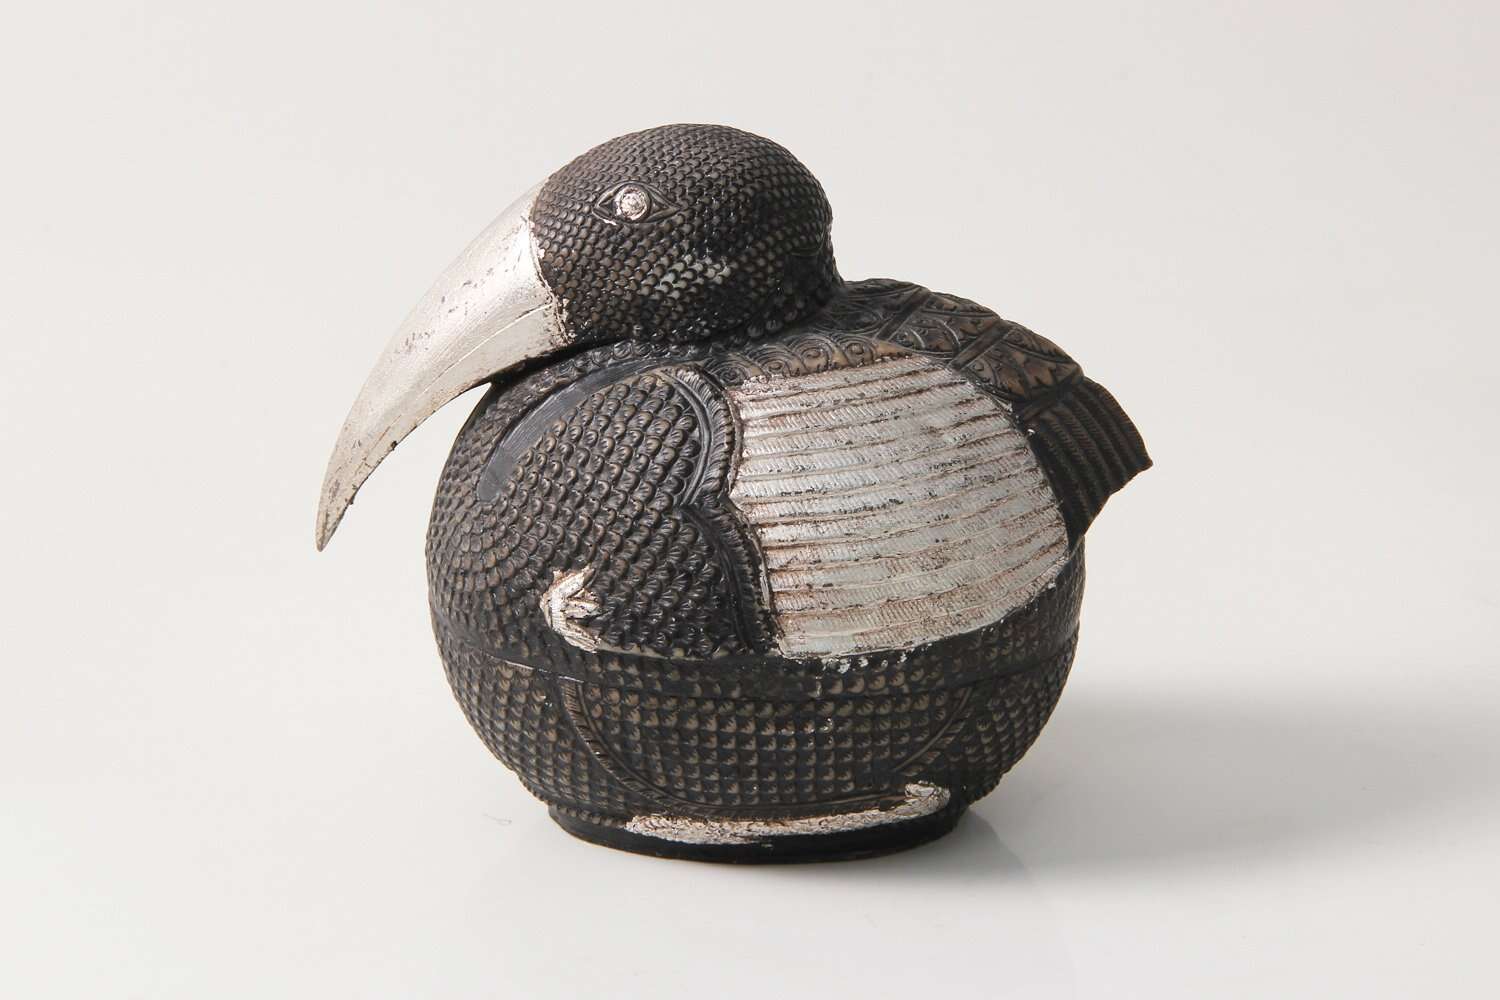 Small silver bird sculpture Pelican bird sculpture